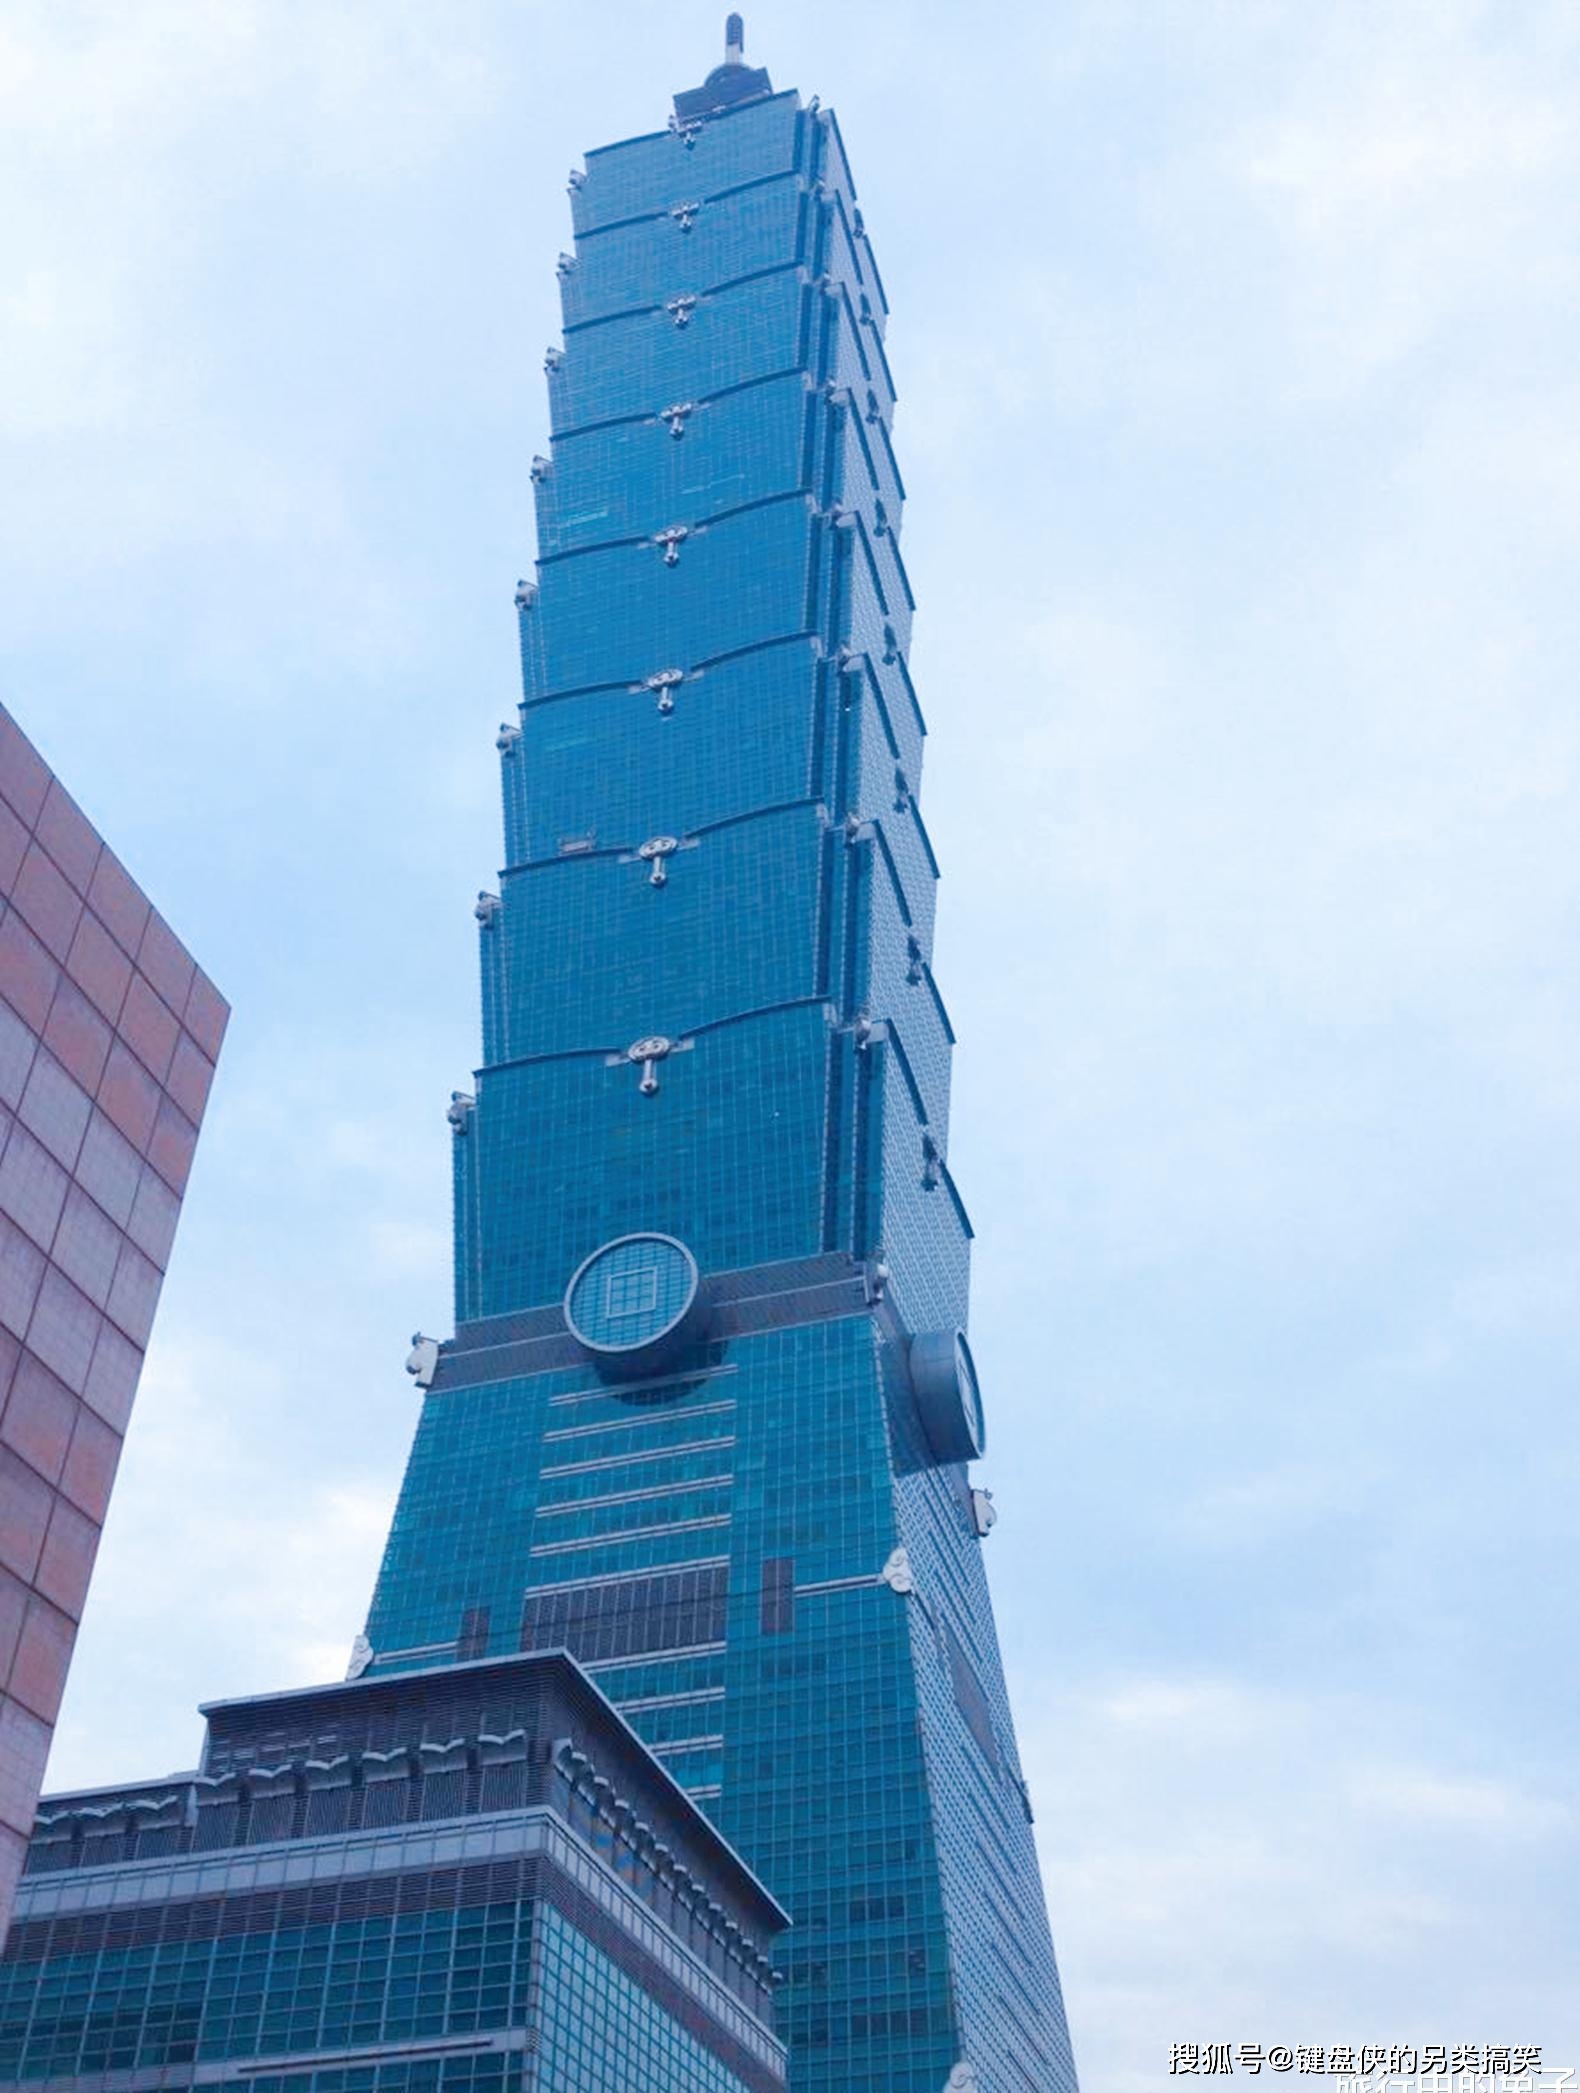 台湾101大厦顶端，有一个600吨重的大铁球，干什么用的？